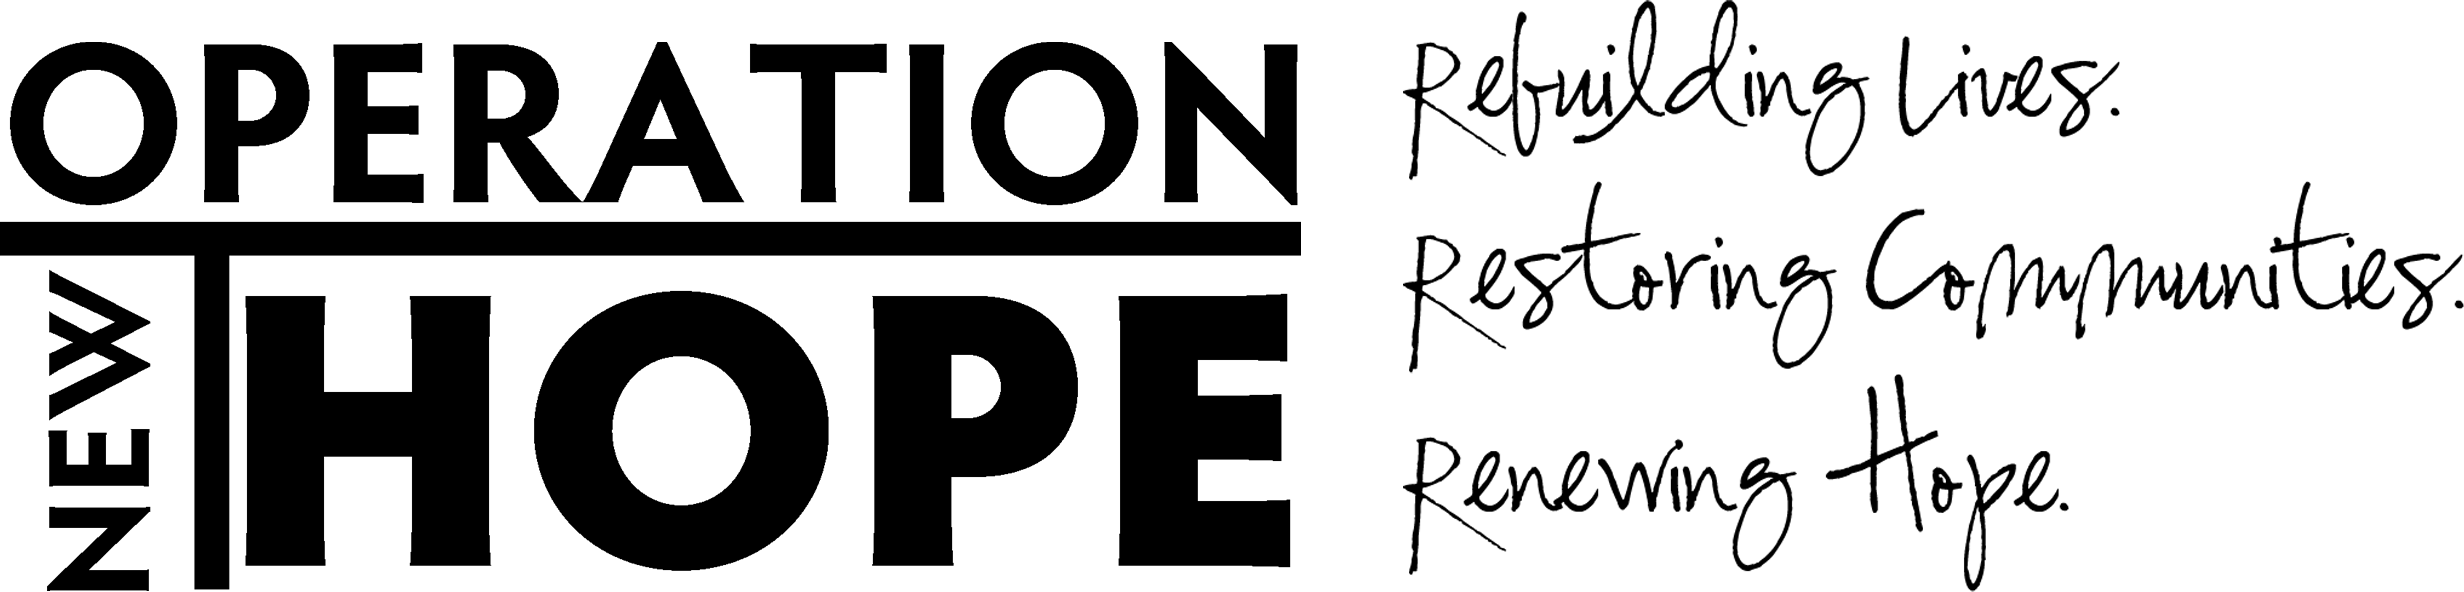 Operation New Hope Company Logo